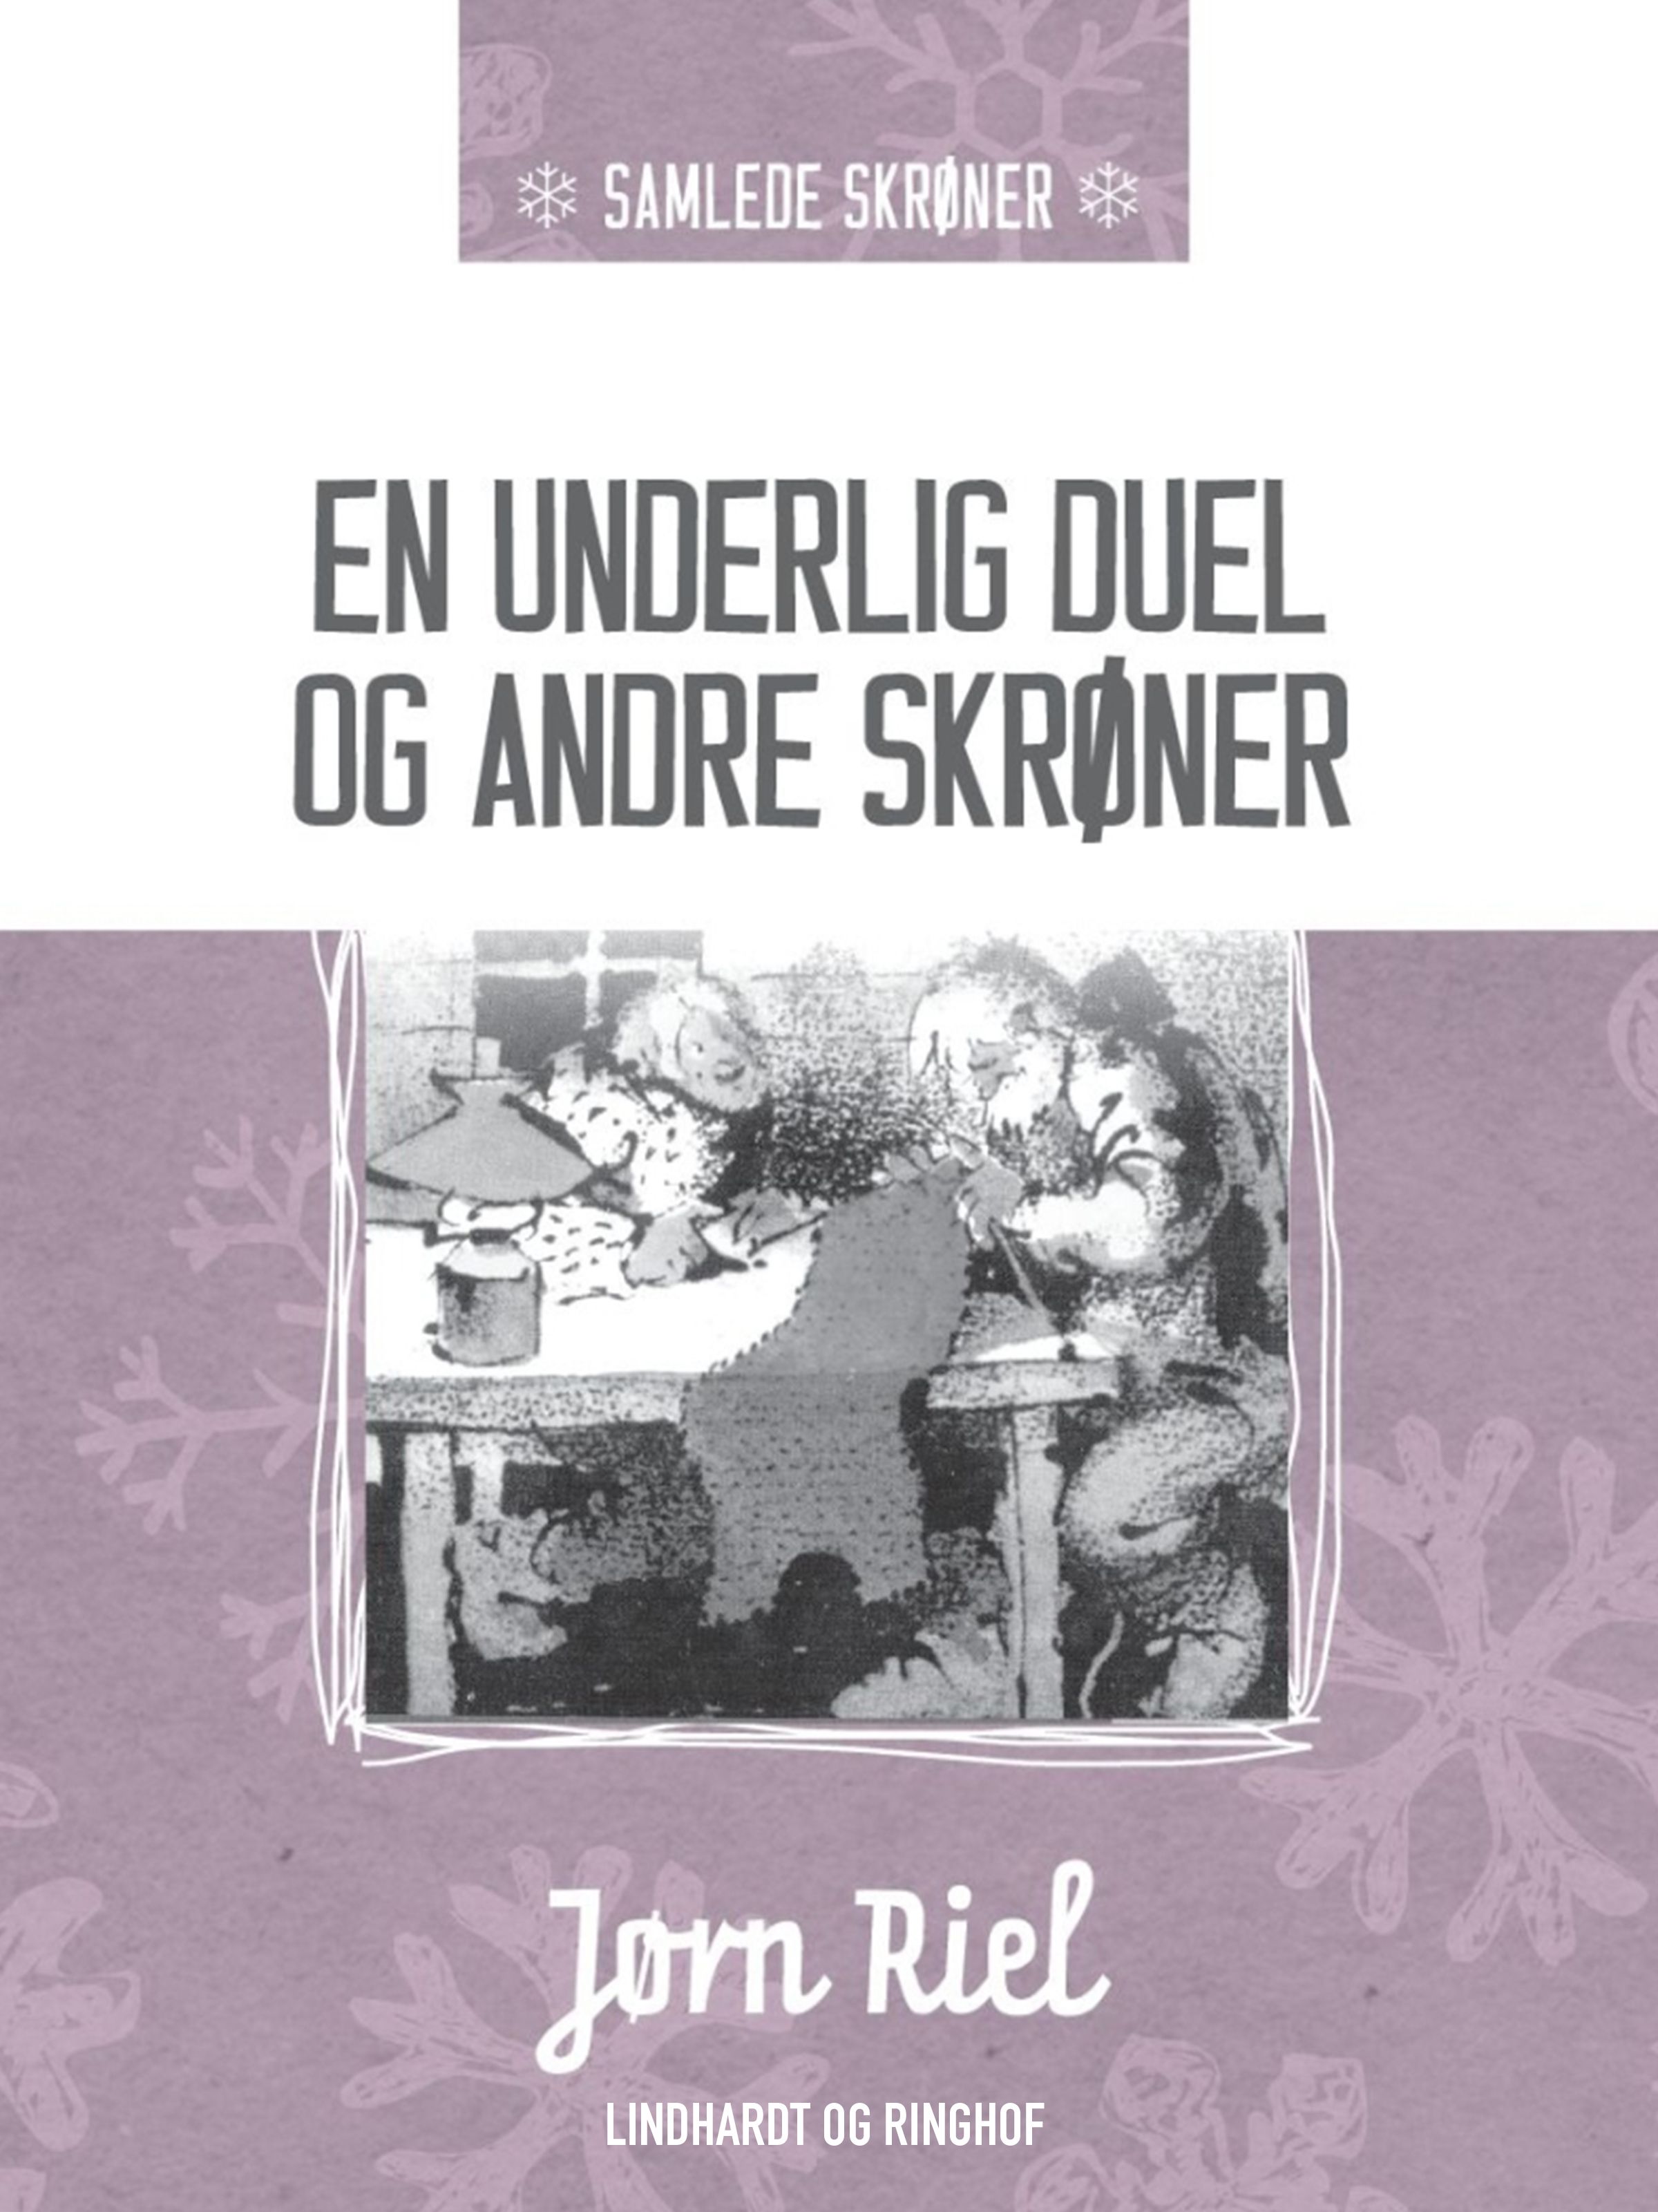 En underlig duel og andre skrøner, e-bok av Jørn Riel